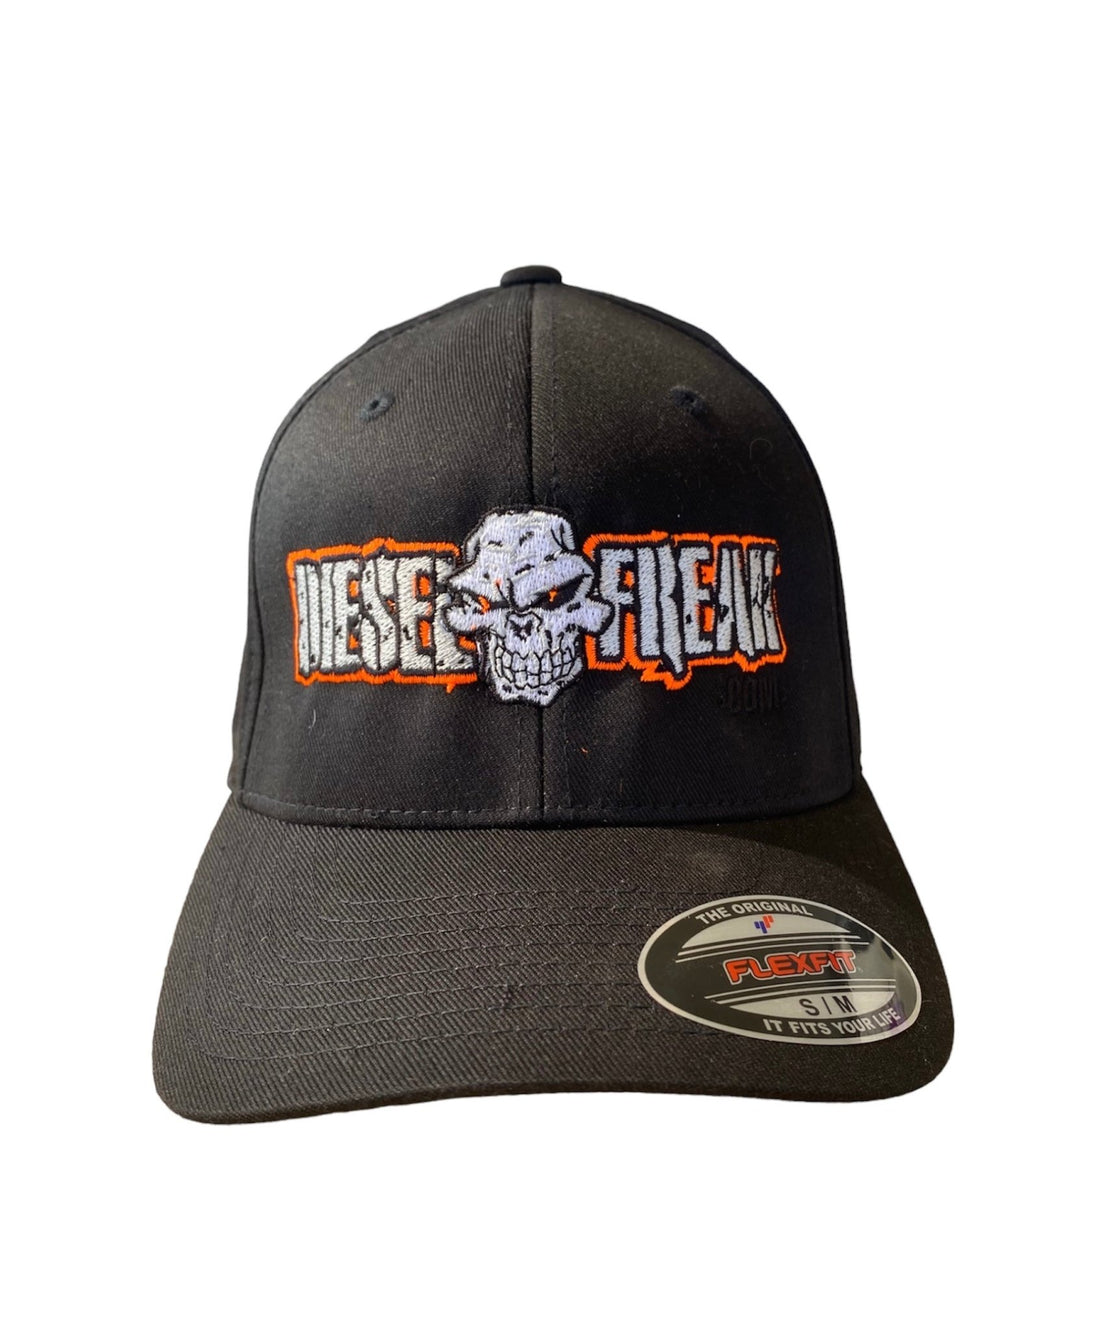 Black and Orange Diesel Freak Hat - Diesel Freak